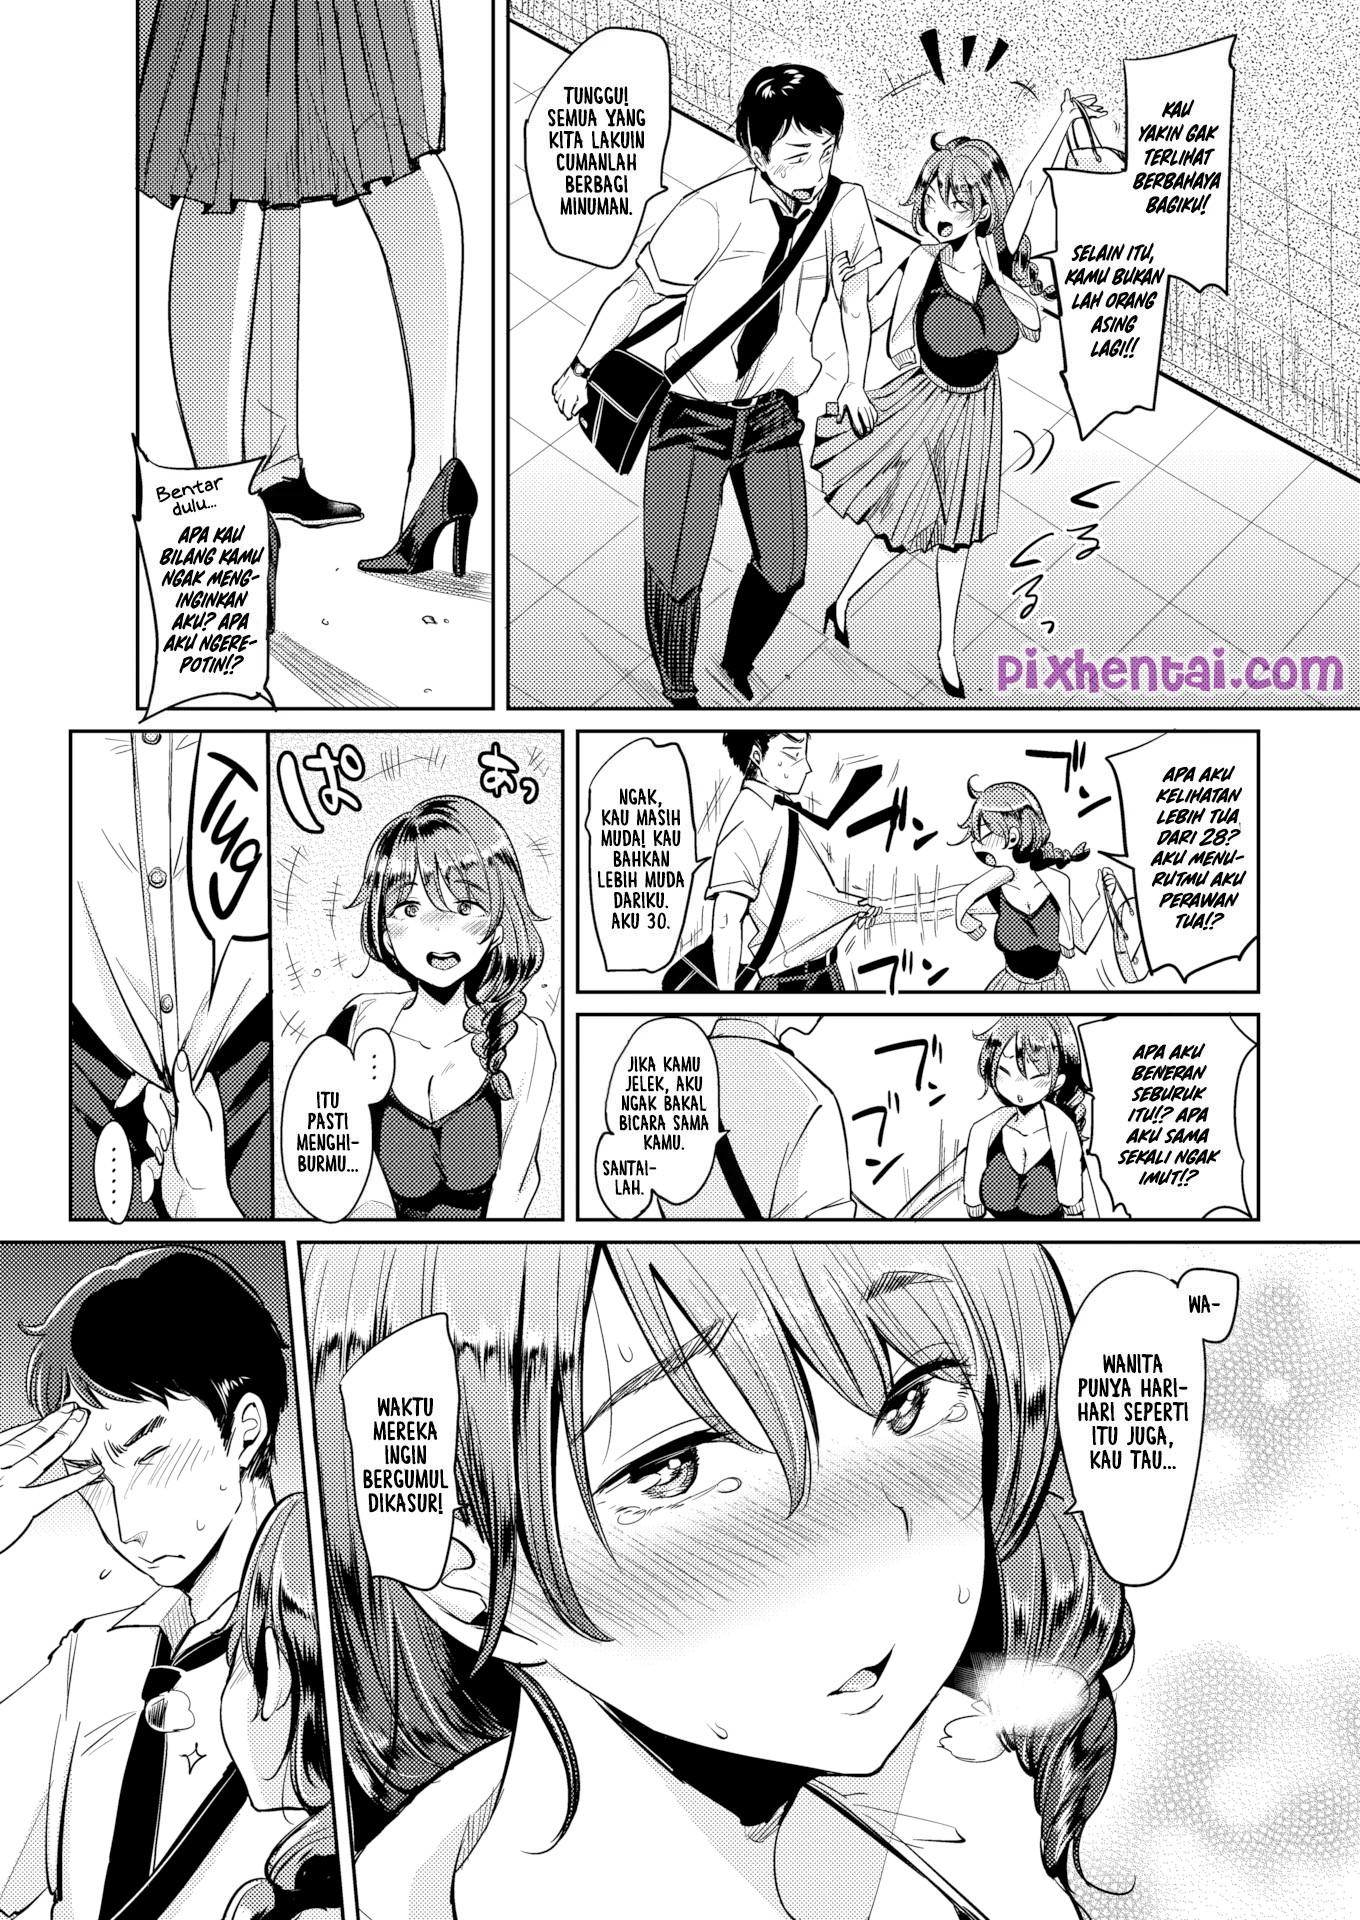 Komik hentai xxx manga sex bokep bawa cewek yang baru dikenal ke hotel 05